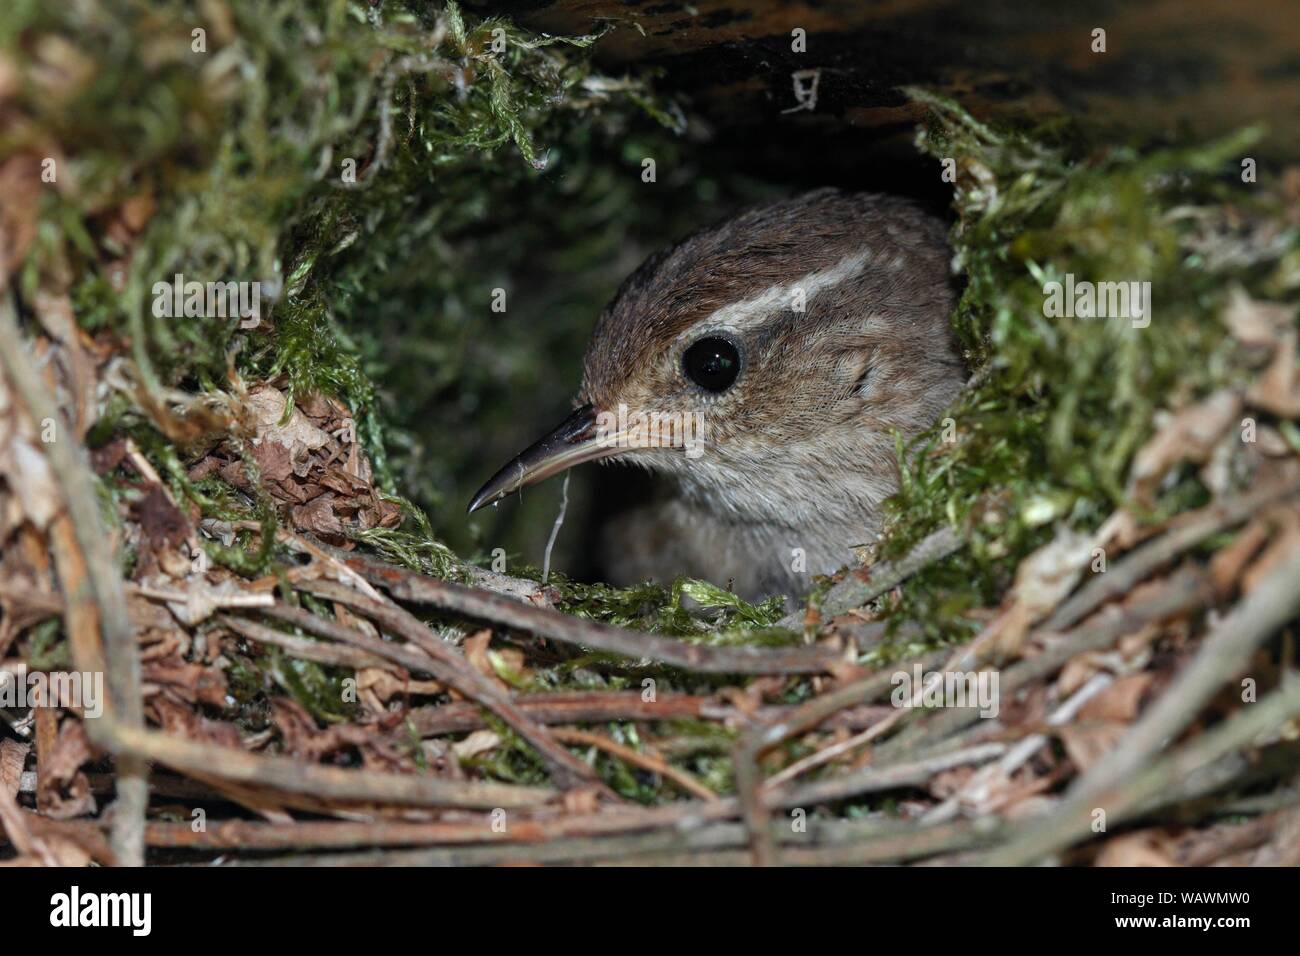 Troglodyte mignon (Troglodytes troglodytes), ancien nid d'oiseaux qui nichent dans le Parc Naturel, Peental, Mecklembourg-Poméranie-Occidentale, Allemagne Banque D'Images